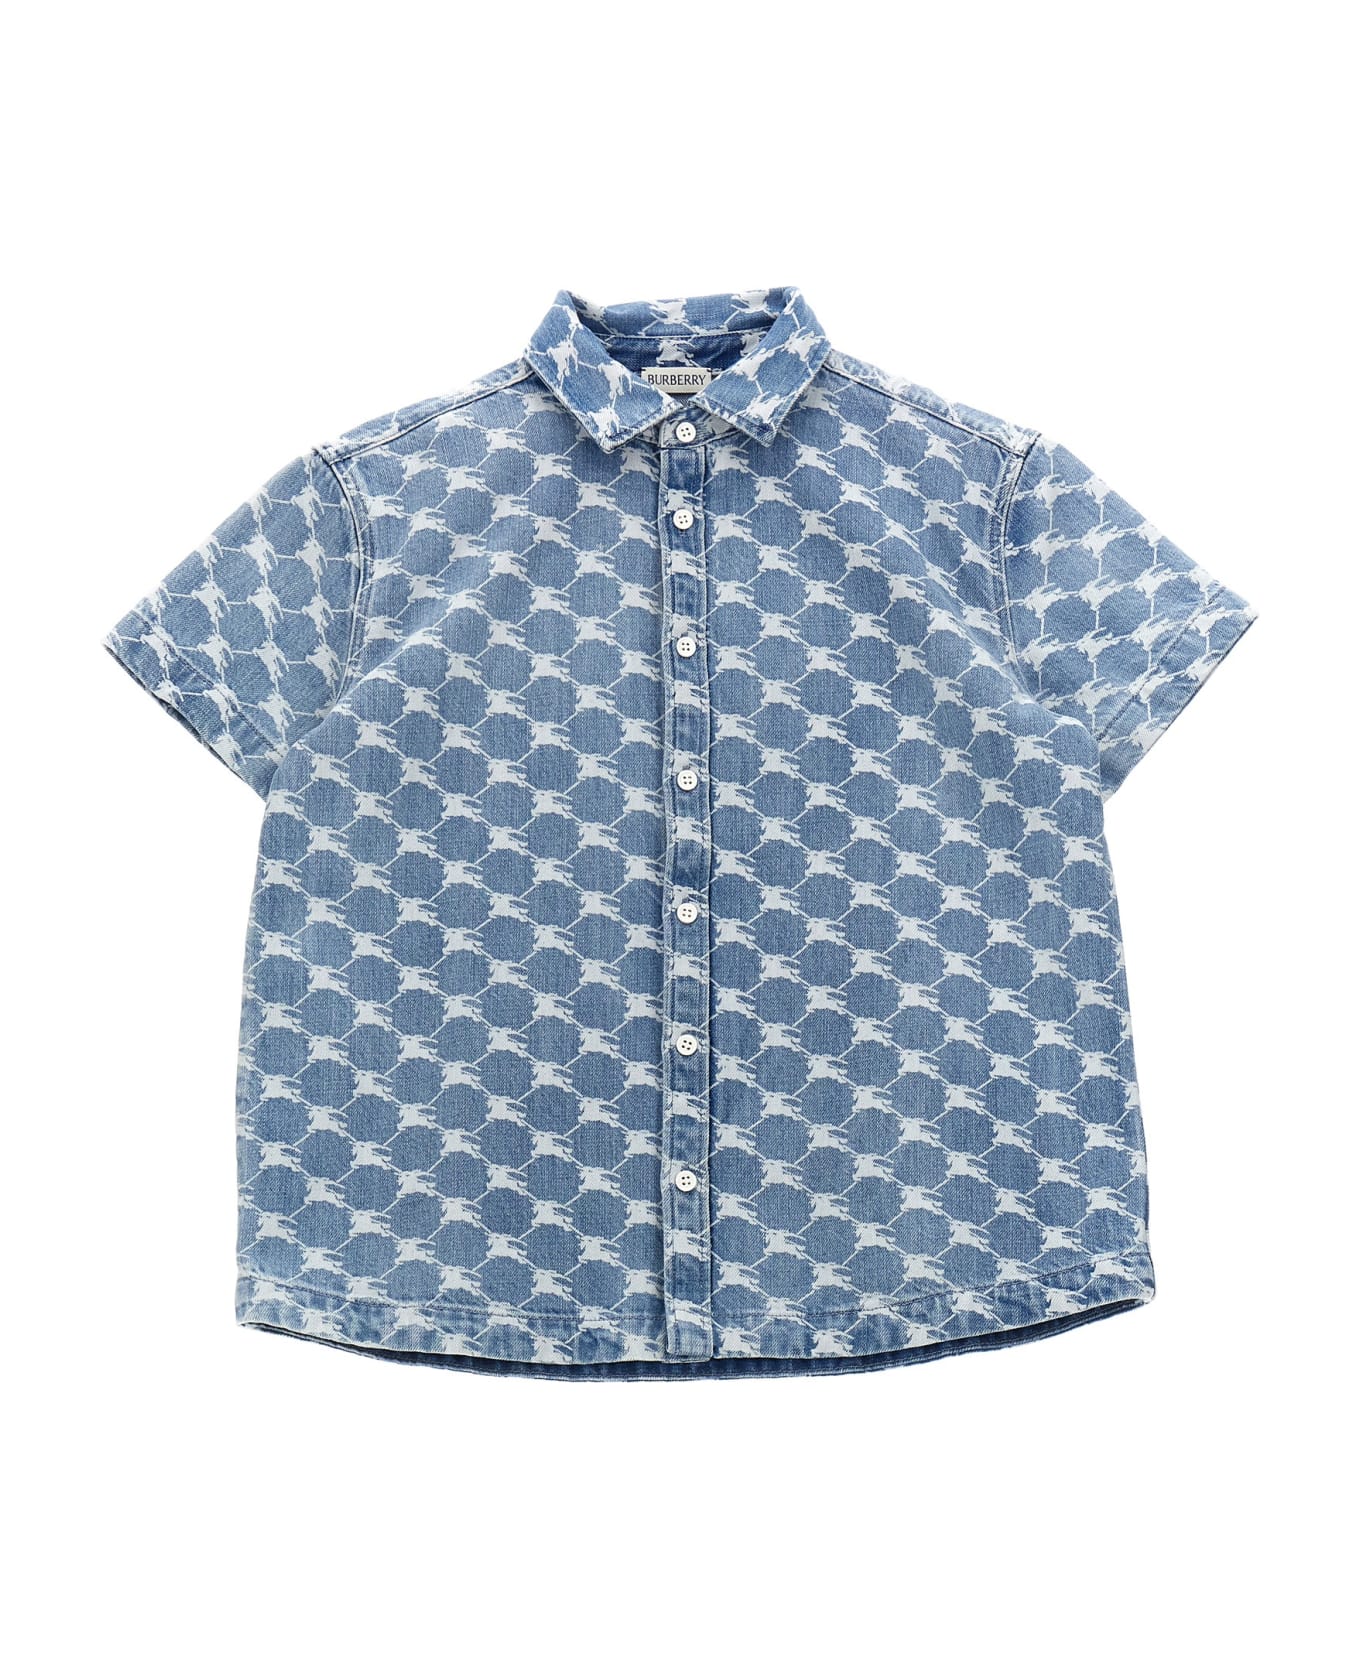 Burberry 'alan' Shirt - Light Blue シャツ